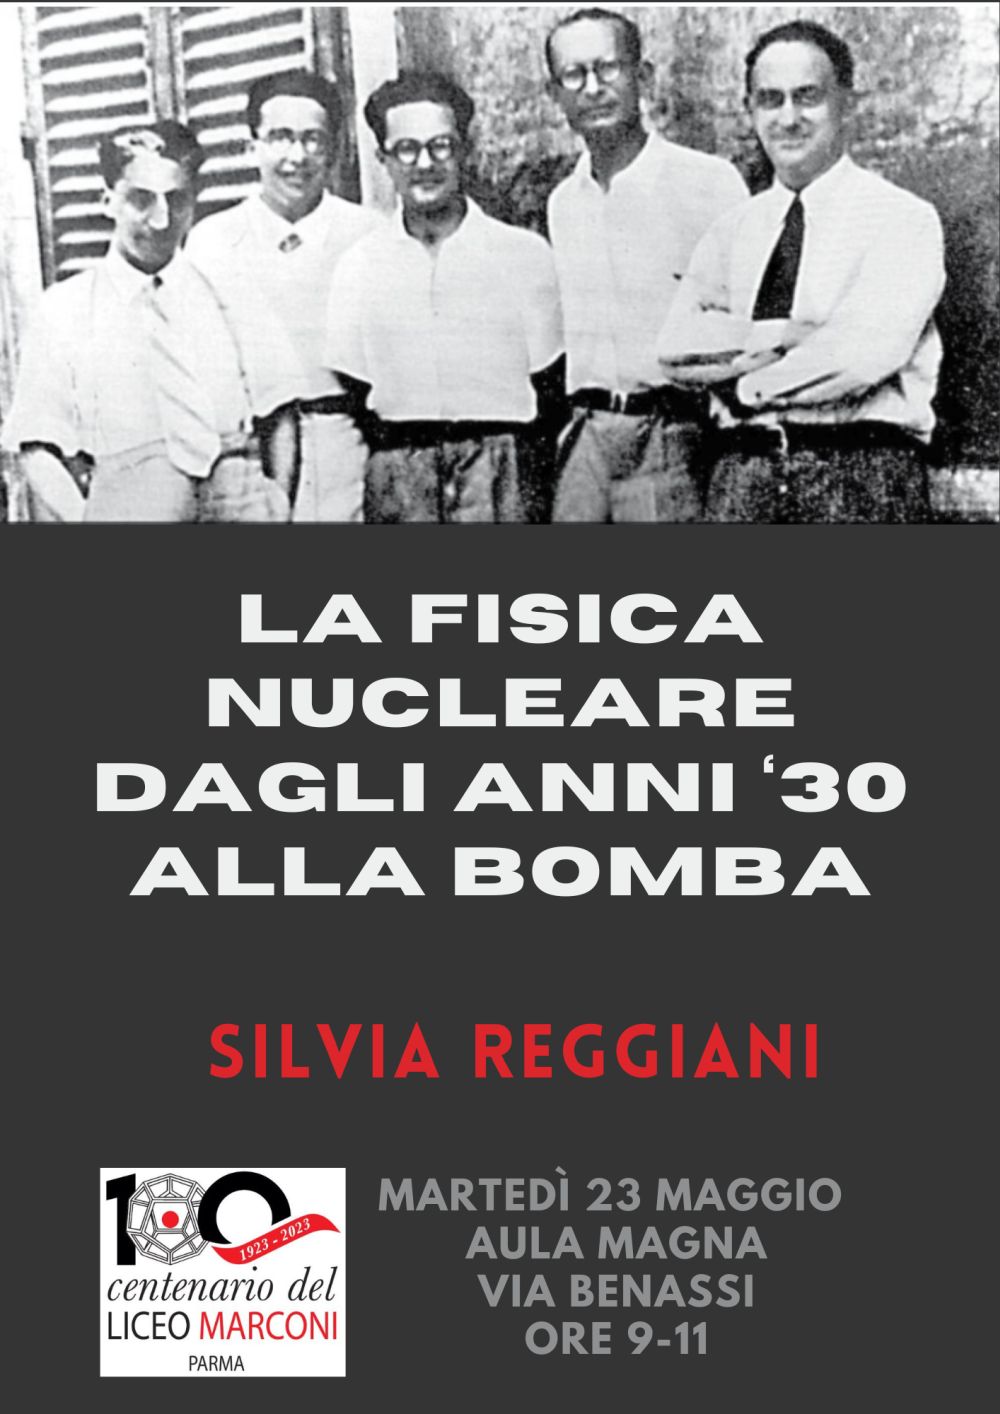 Silvia Reggiani 23 maggio